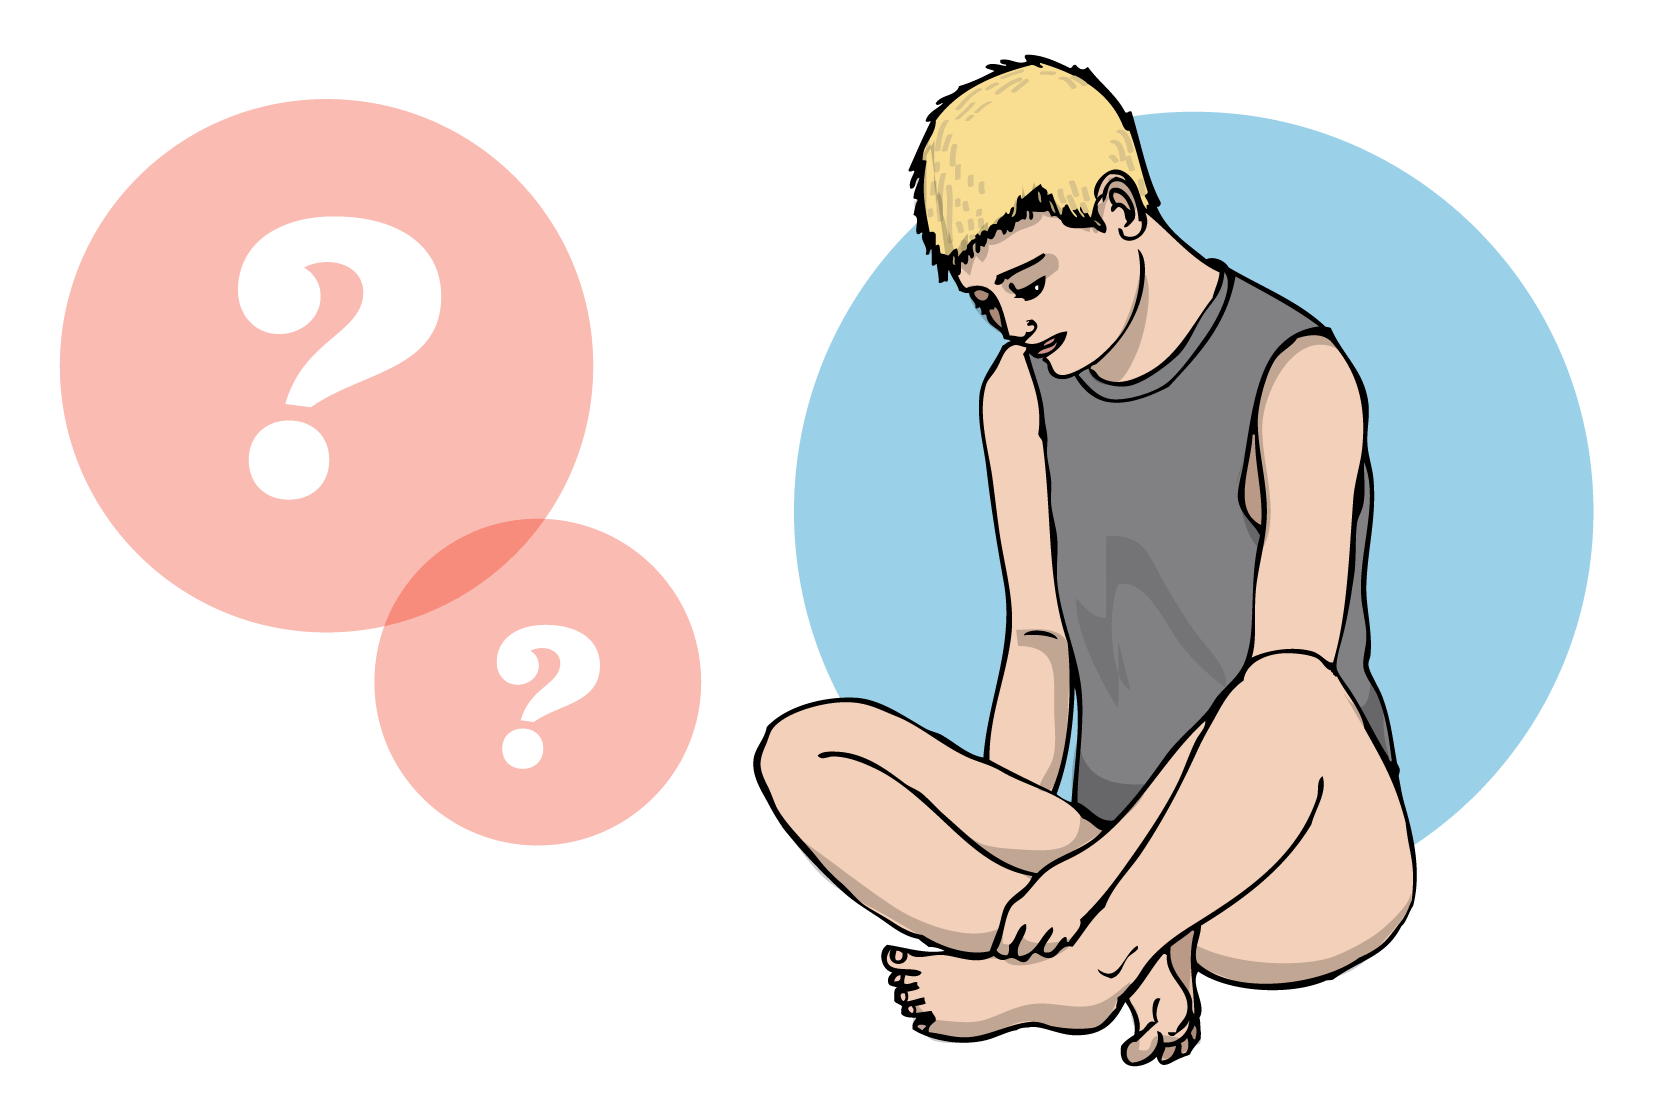 Person som sitter med korslagda ben och tittar ner mot underlivet. Bredvid har hen tankebubblor med frågetecken i, illustration.